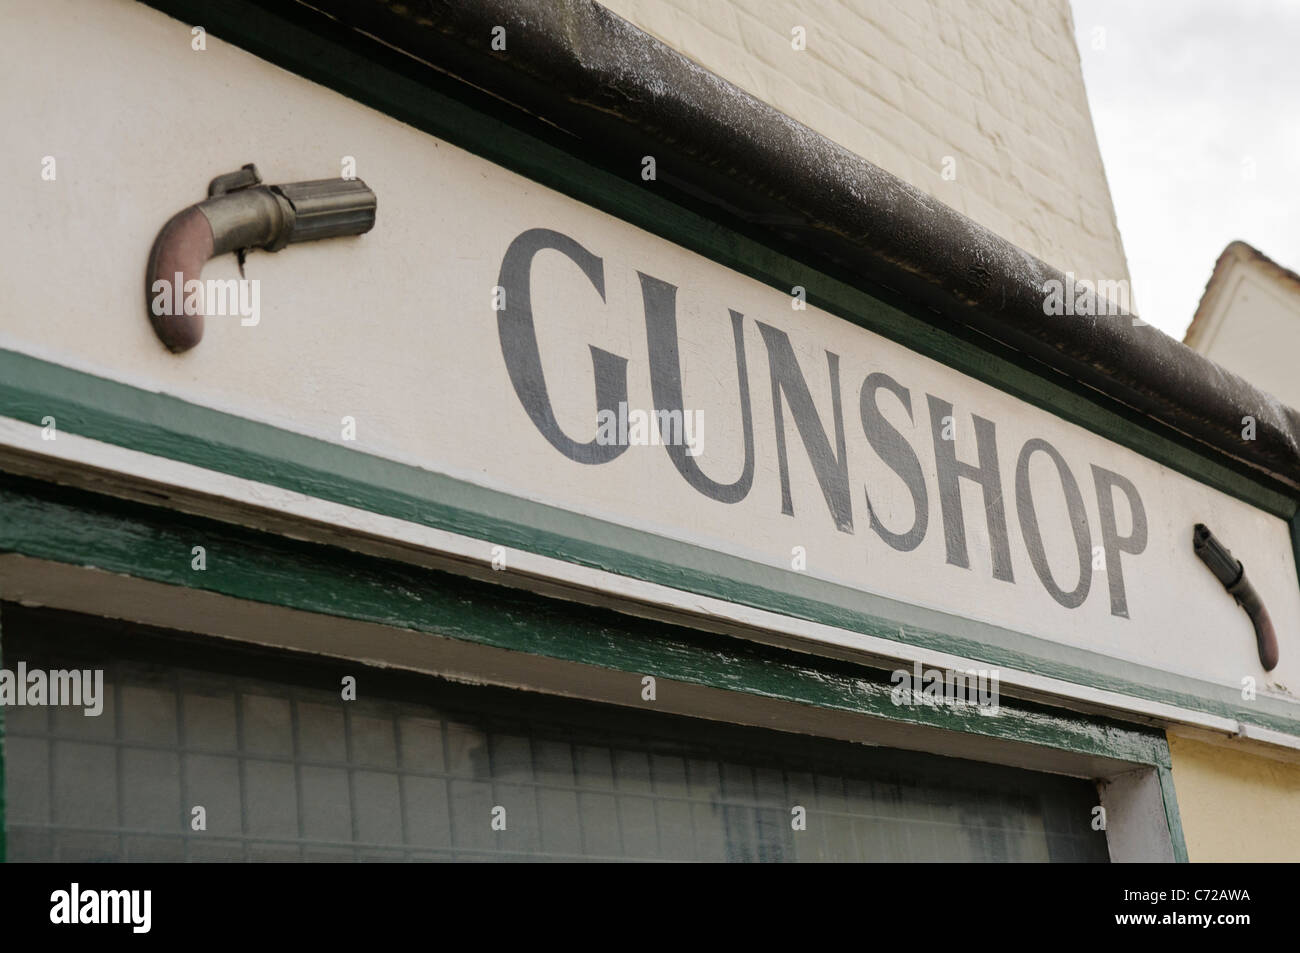 Gunshop dans un village anglais Banque D'Images